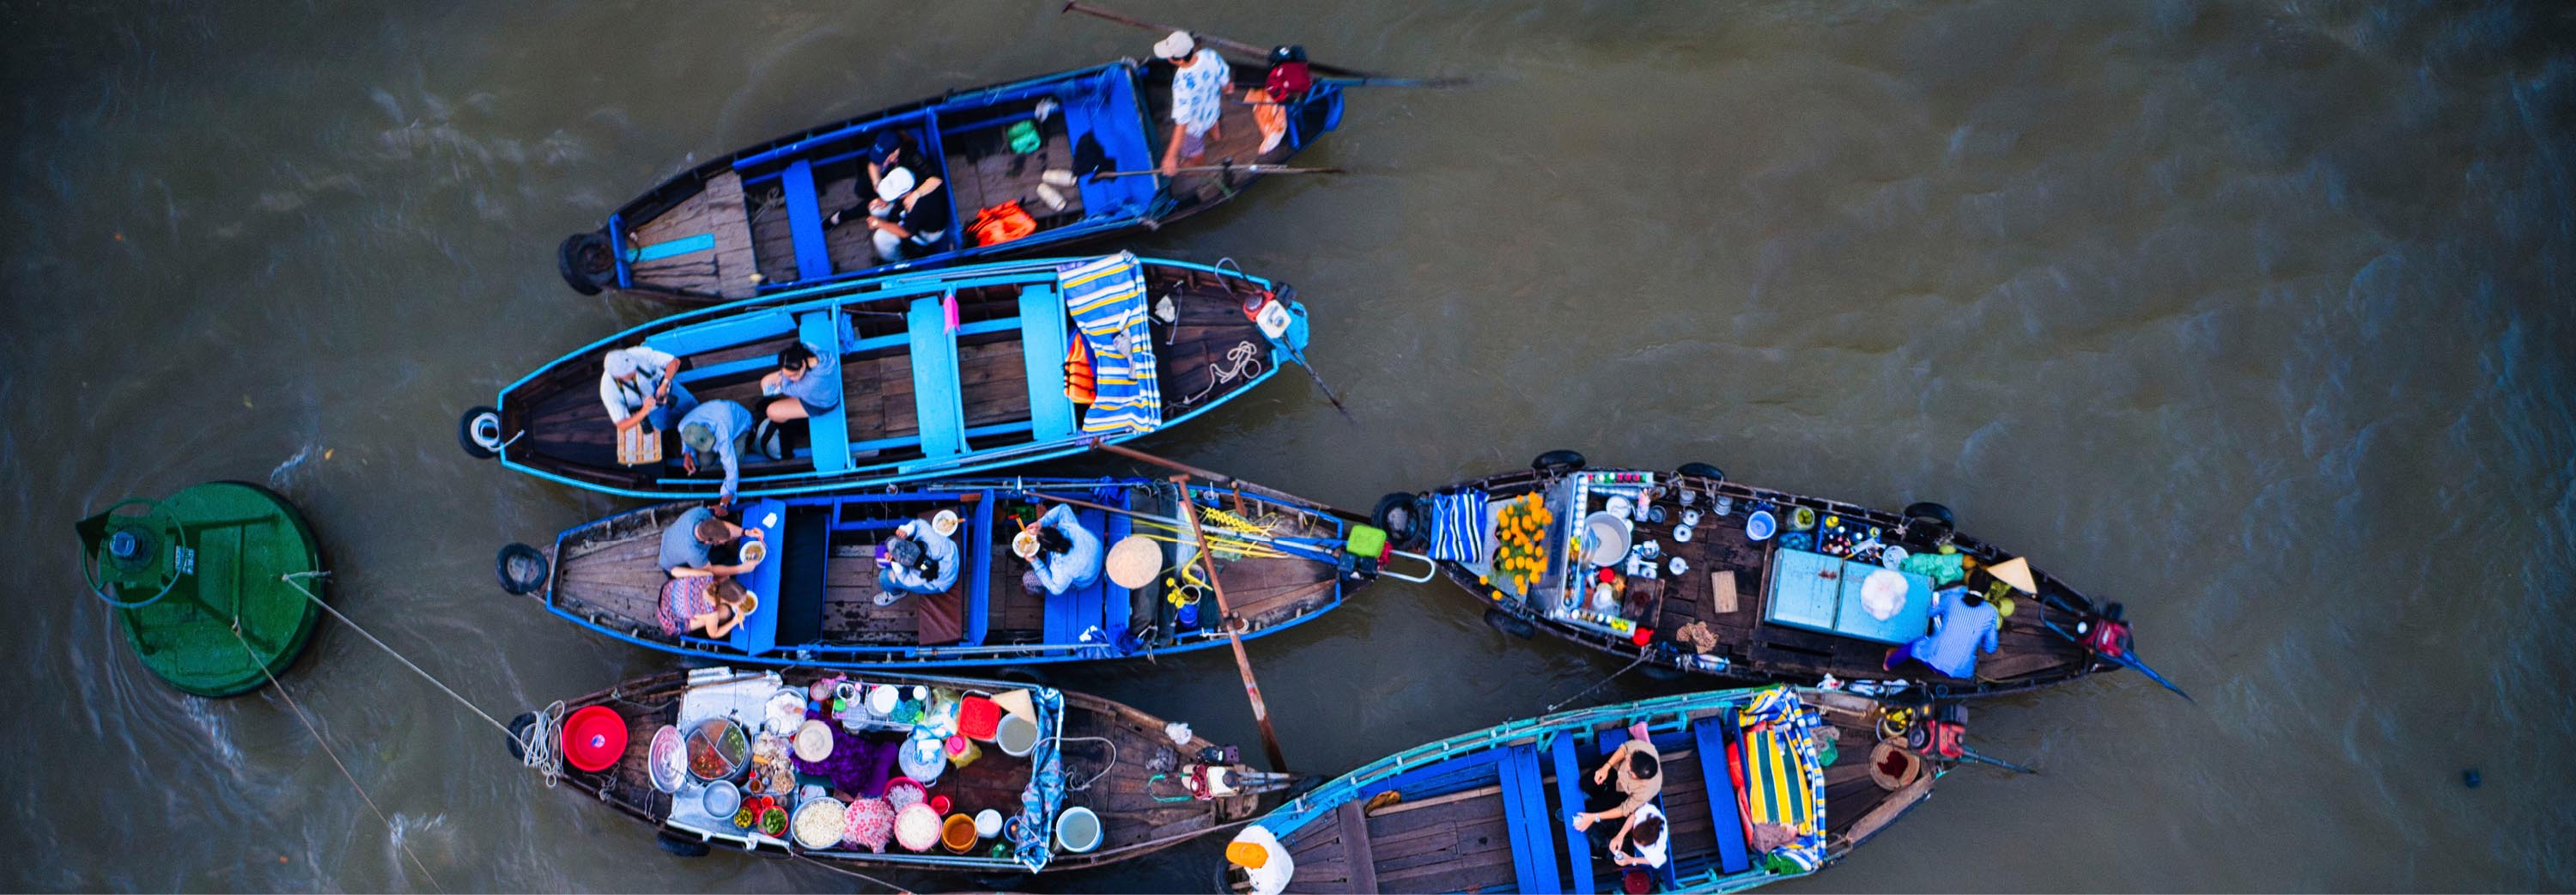 Cái Bè floating market , Ho Chi Minh City